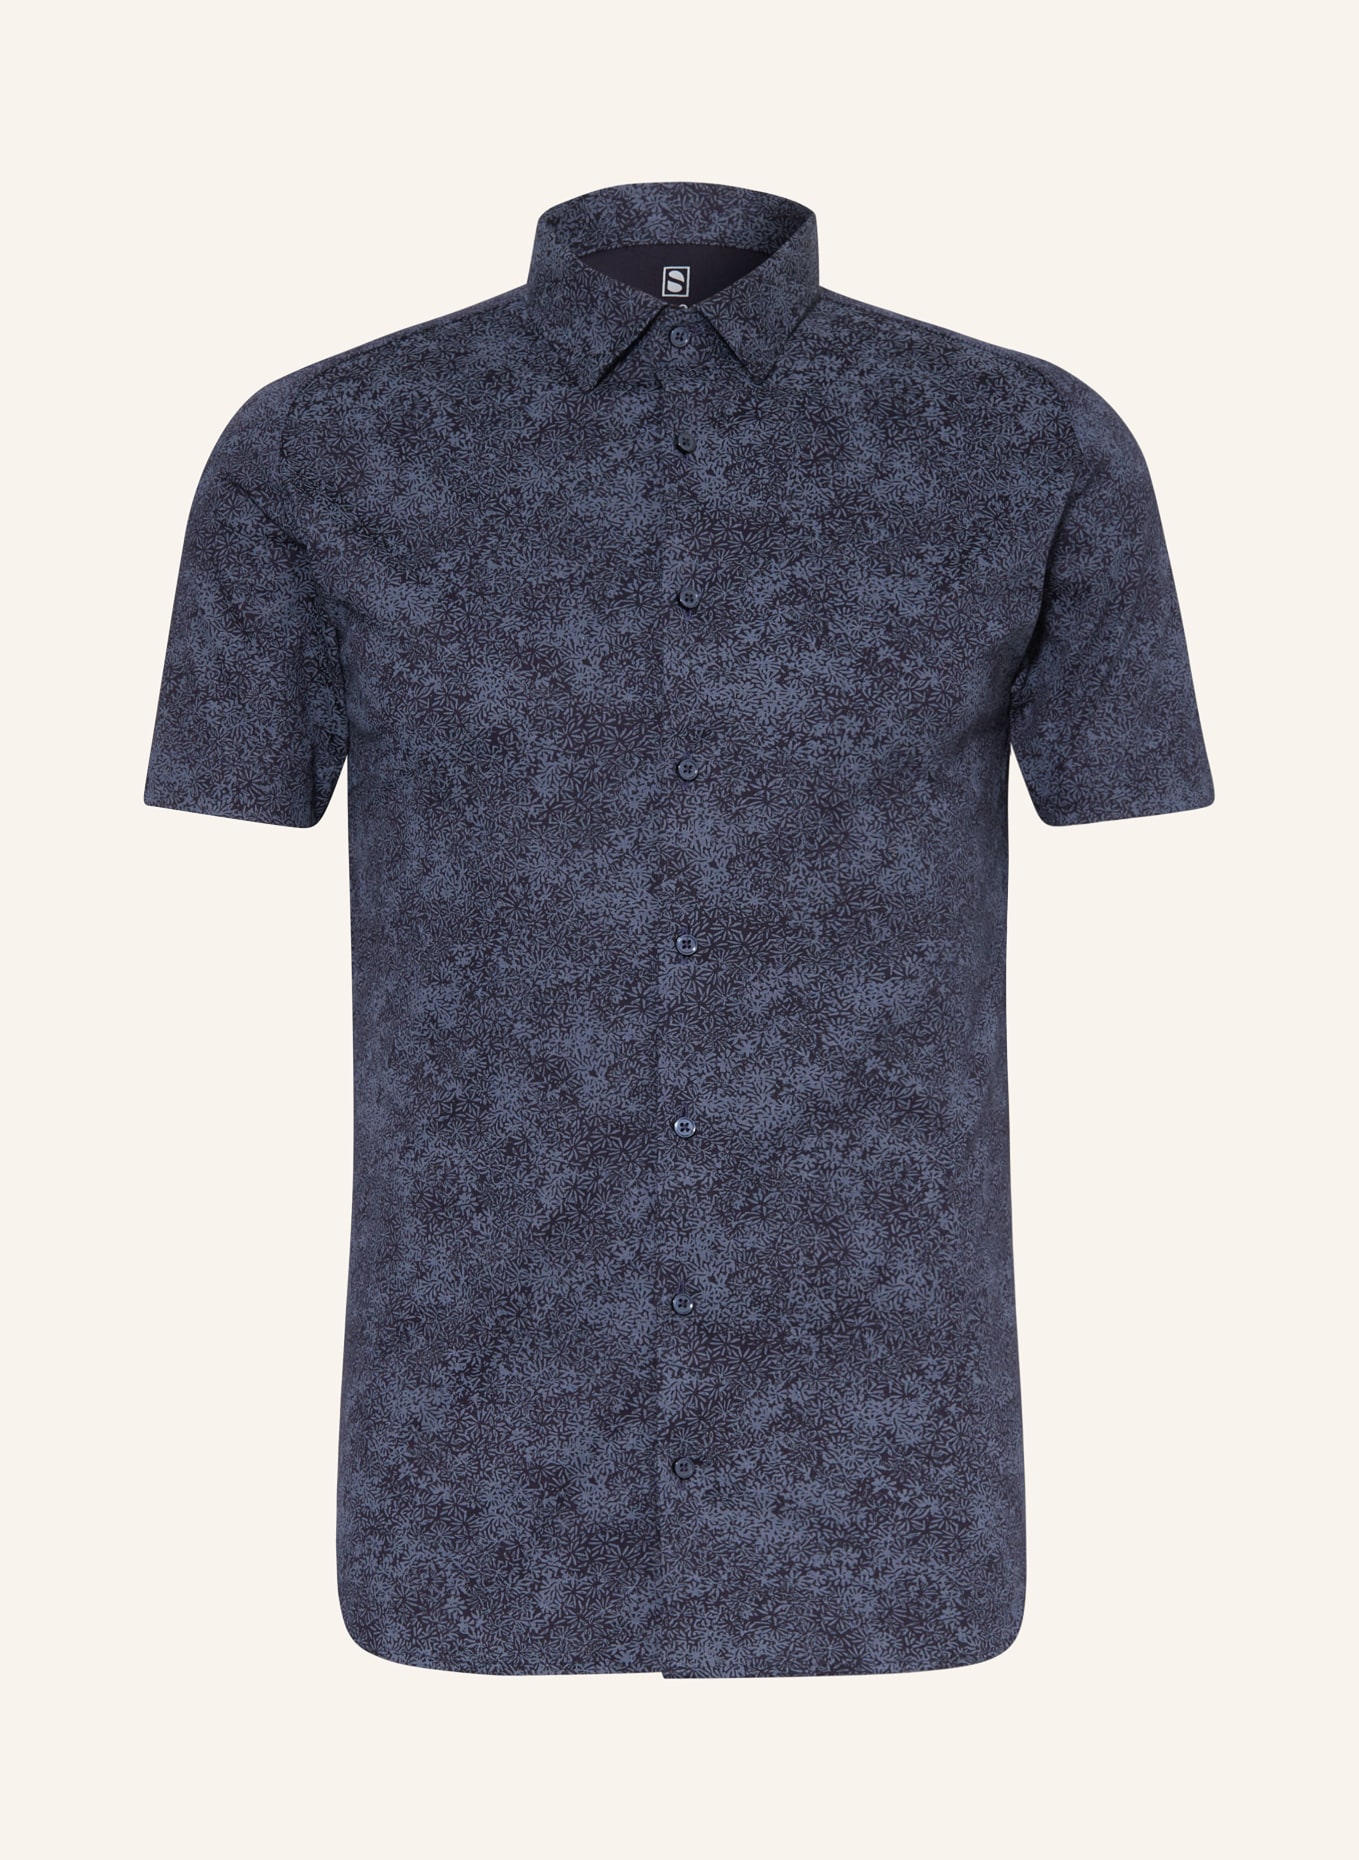 DESOTO Short sleeve shirt slim fit in jersey, Color: DARK BLUE/ BLUE (Image 1)